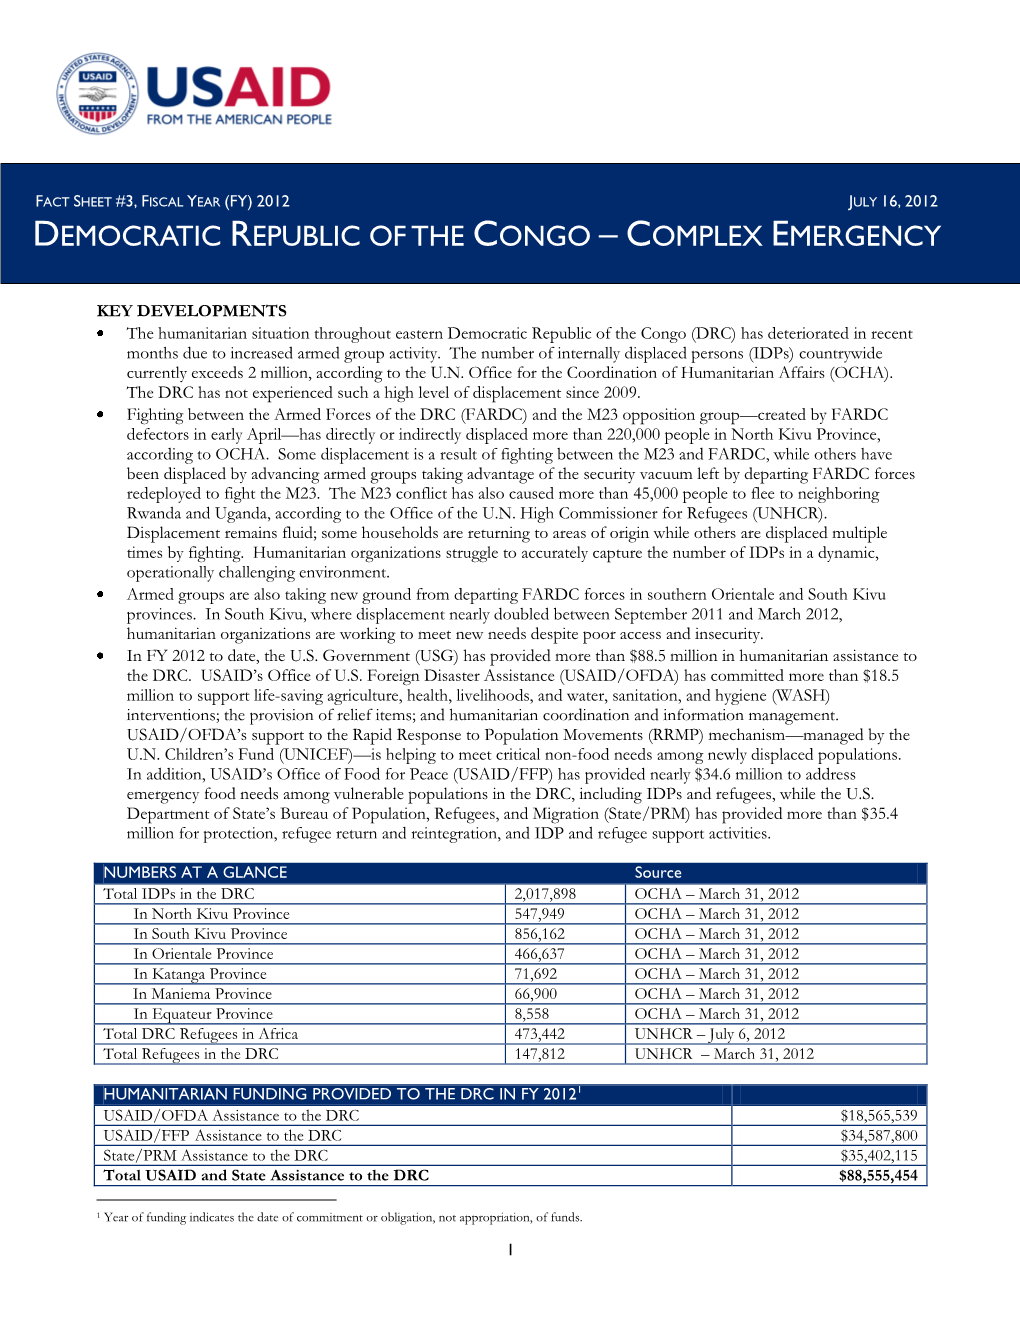 Democratic Republic of Congo Fact Sheet #3 07/16/2012